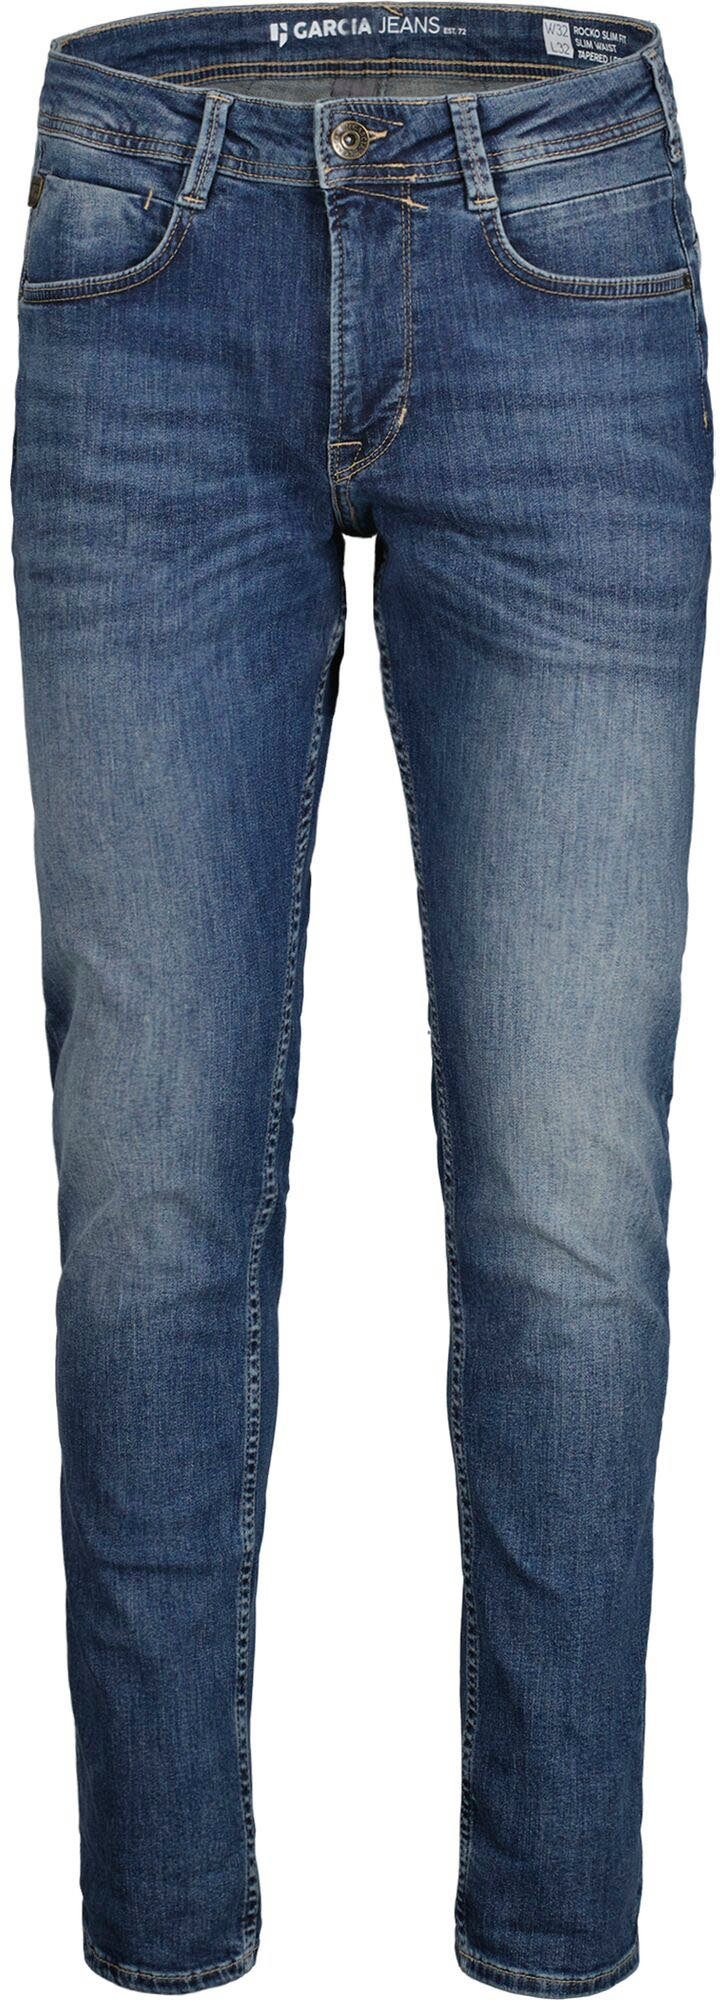 Garcia 5-Pocket-Jeans Rocko in used medium Waschungen verschiedenen